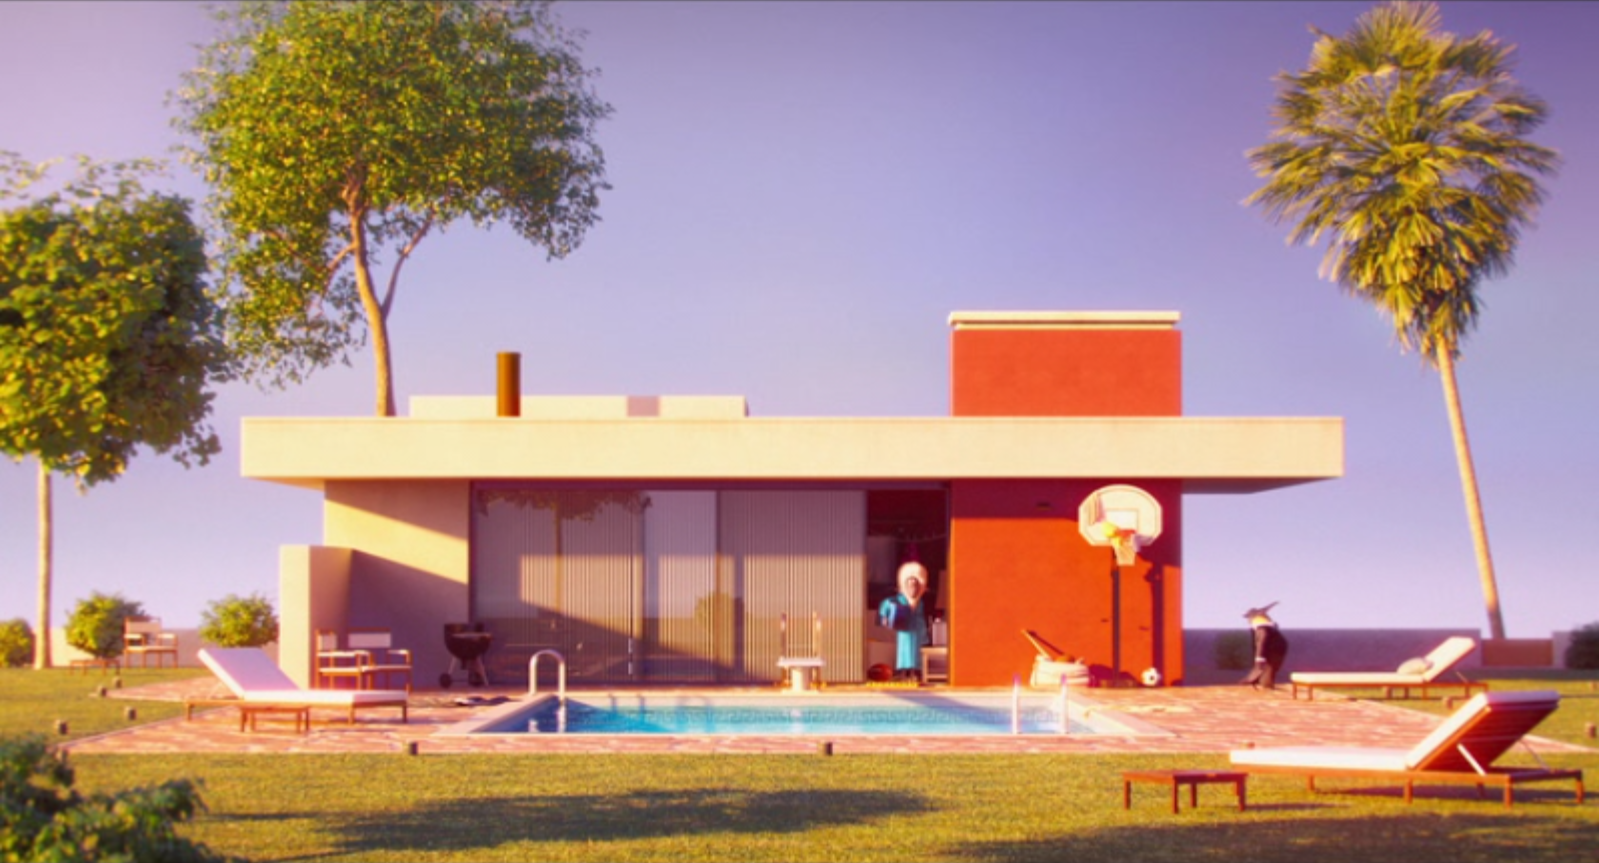 Eddie's pool house | Sing Wiki | FANDOM powered by Wikia1599 x 863